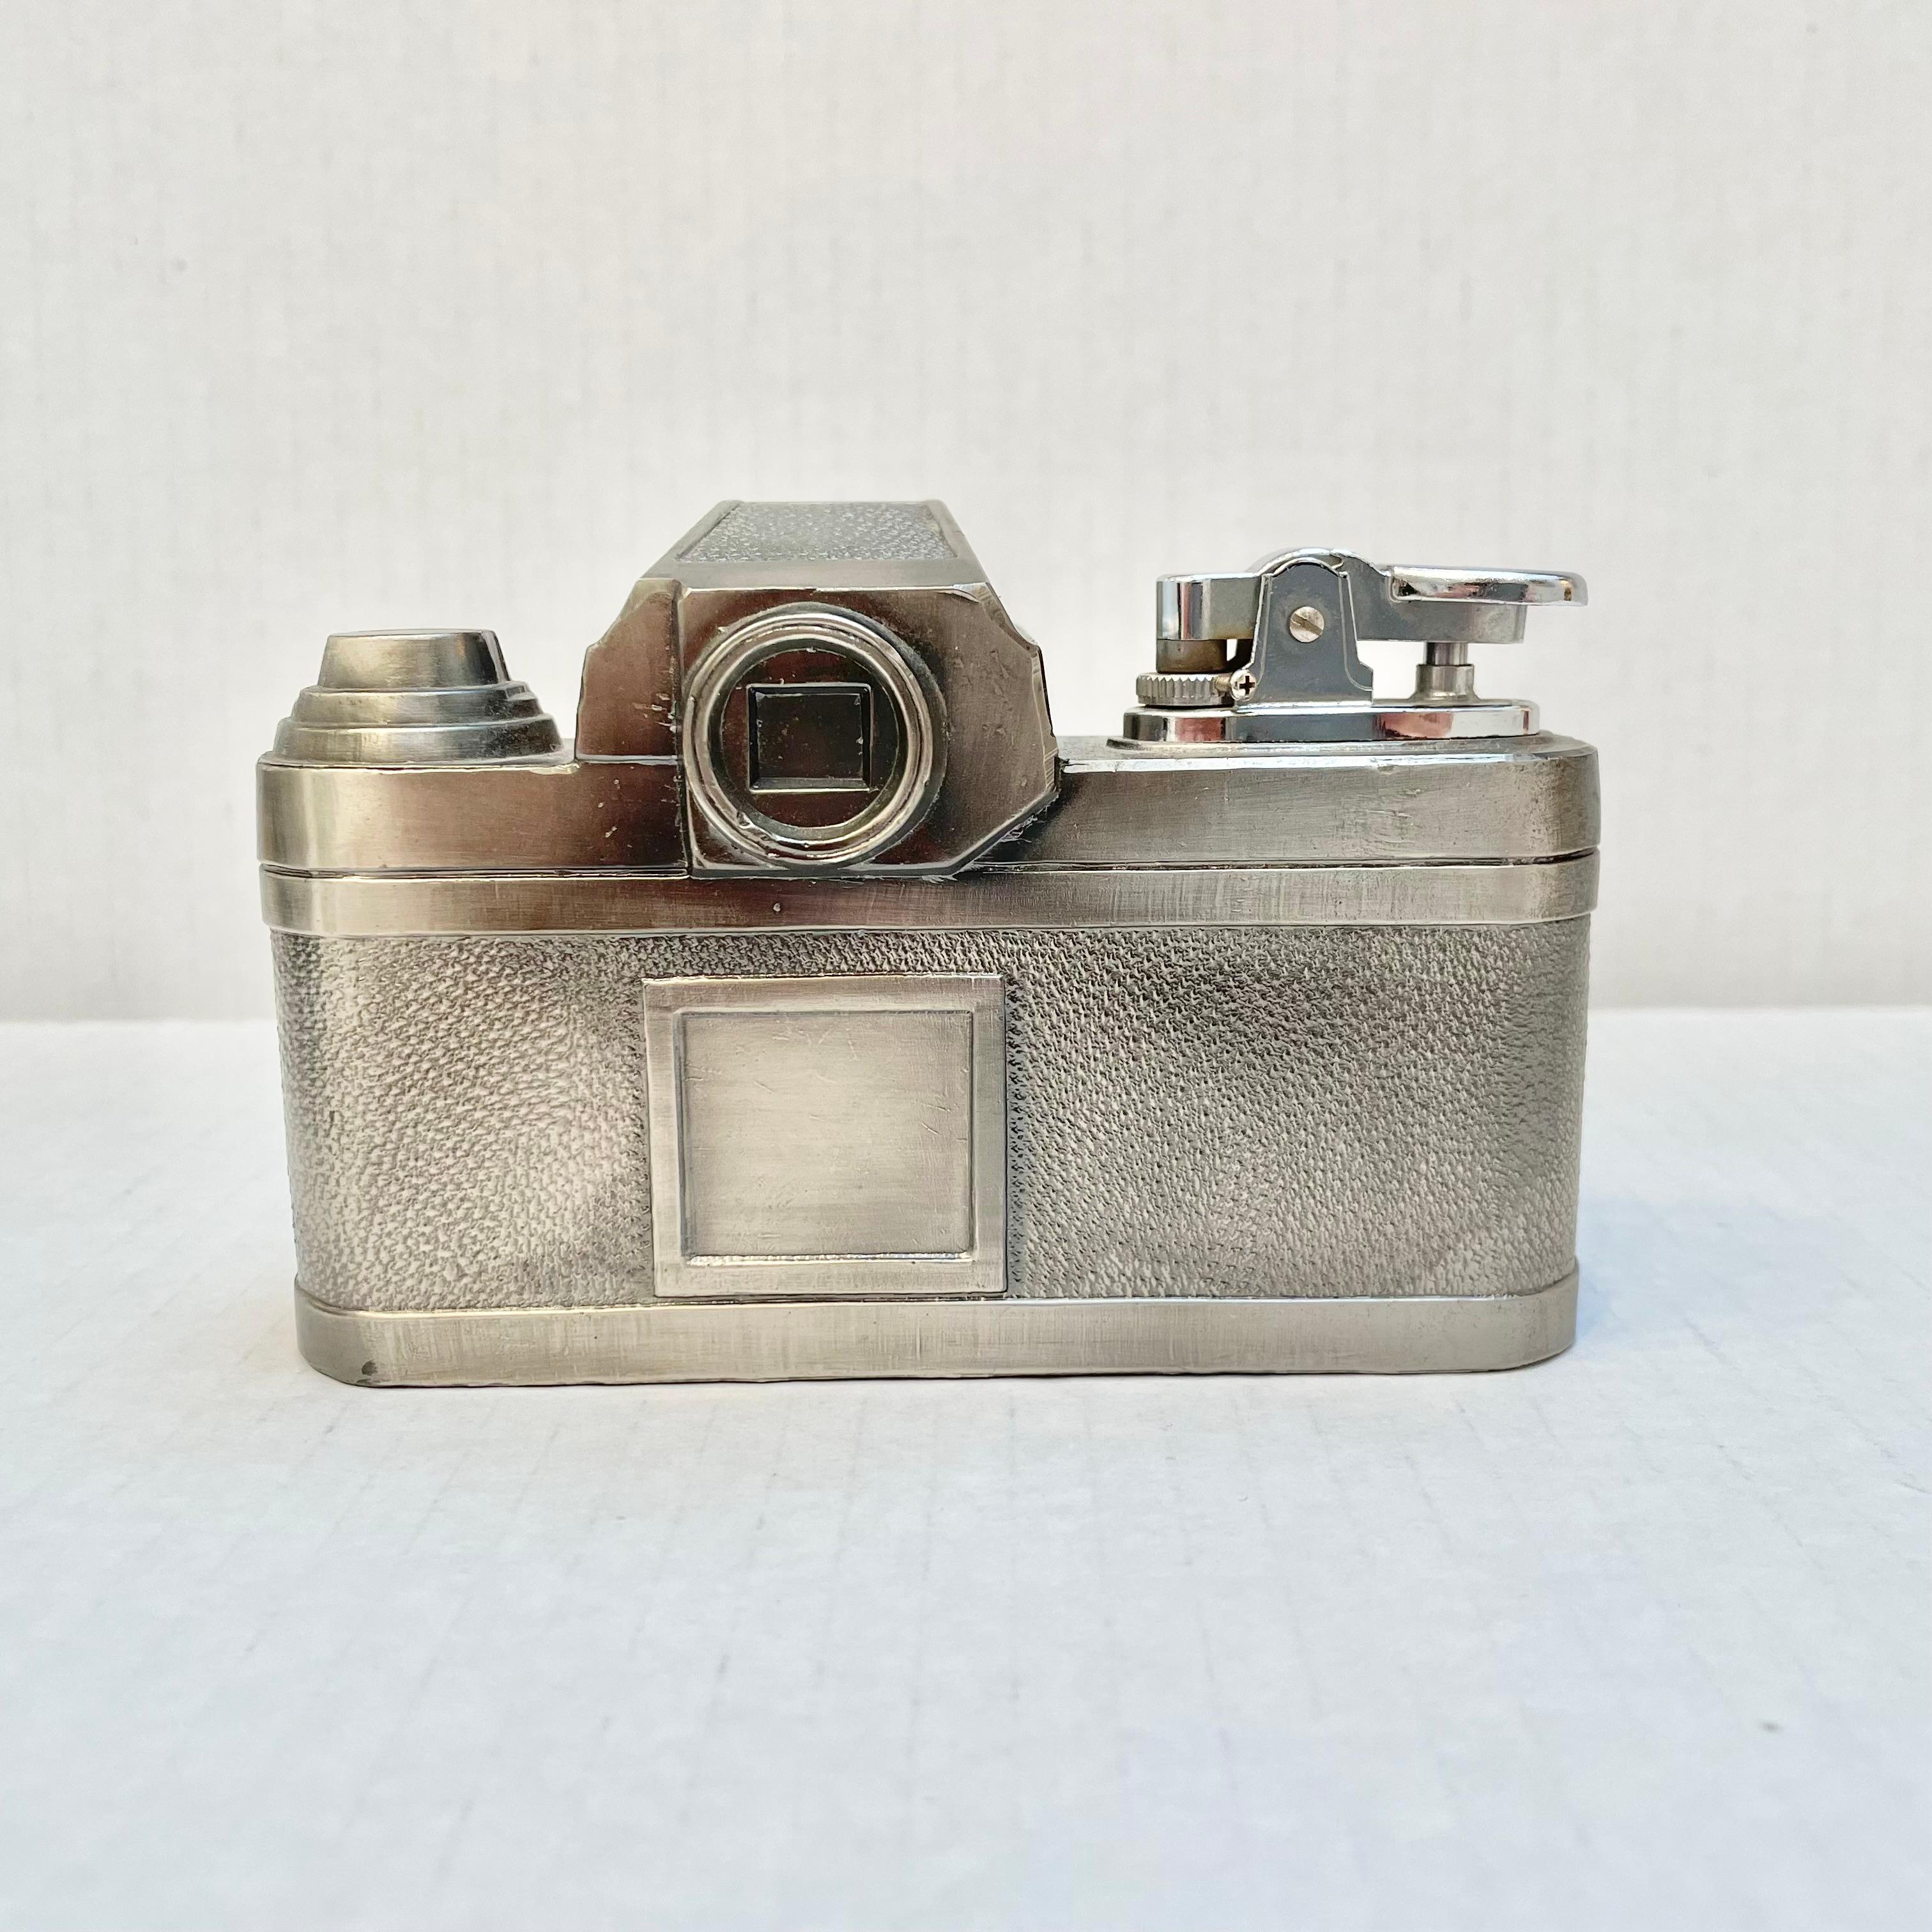 Fin du 20e siècle Briquet pour appareil photo Nikon, années 1980, Japon